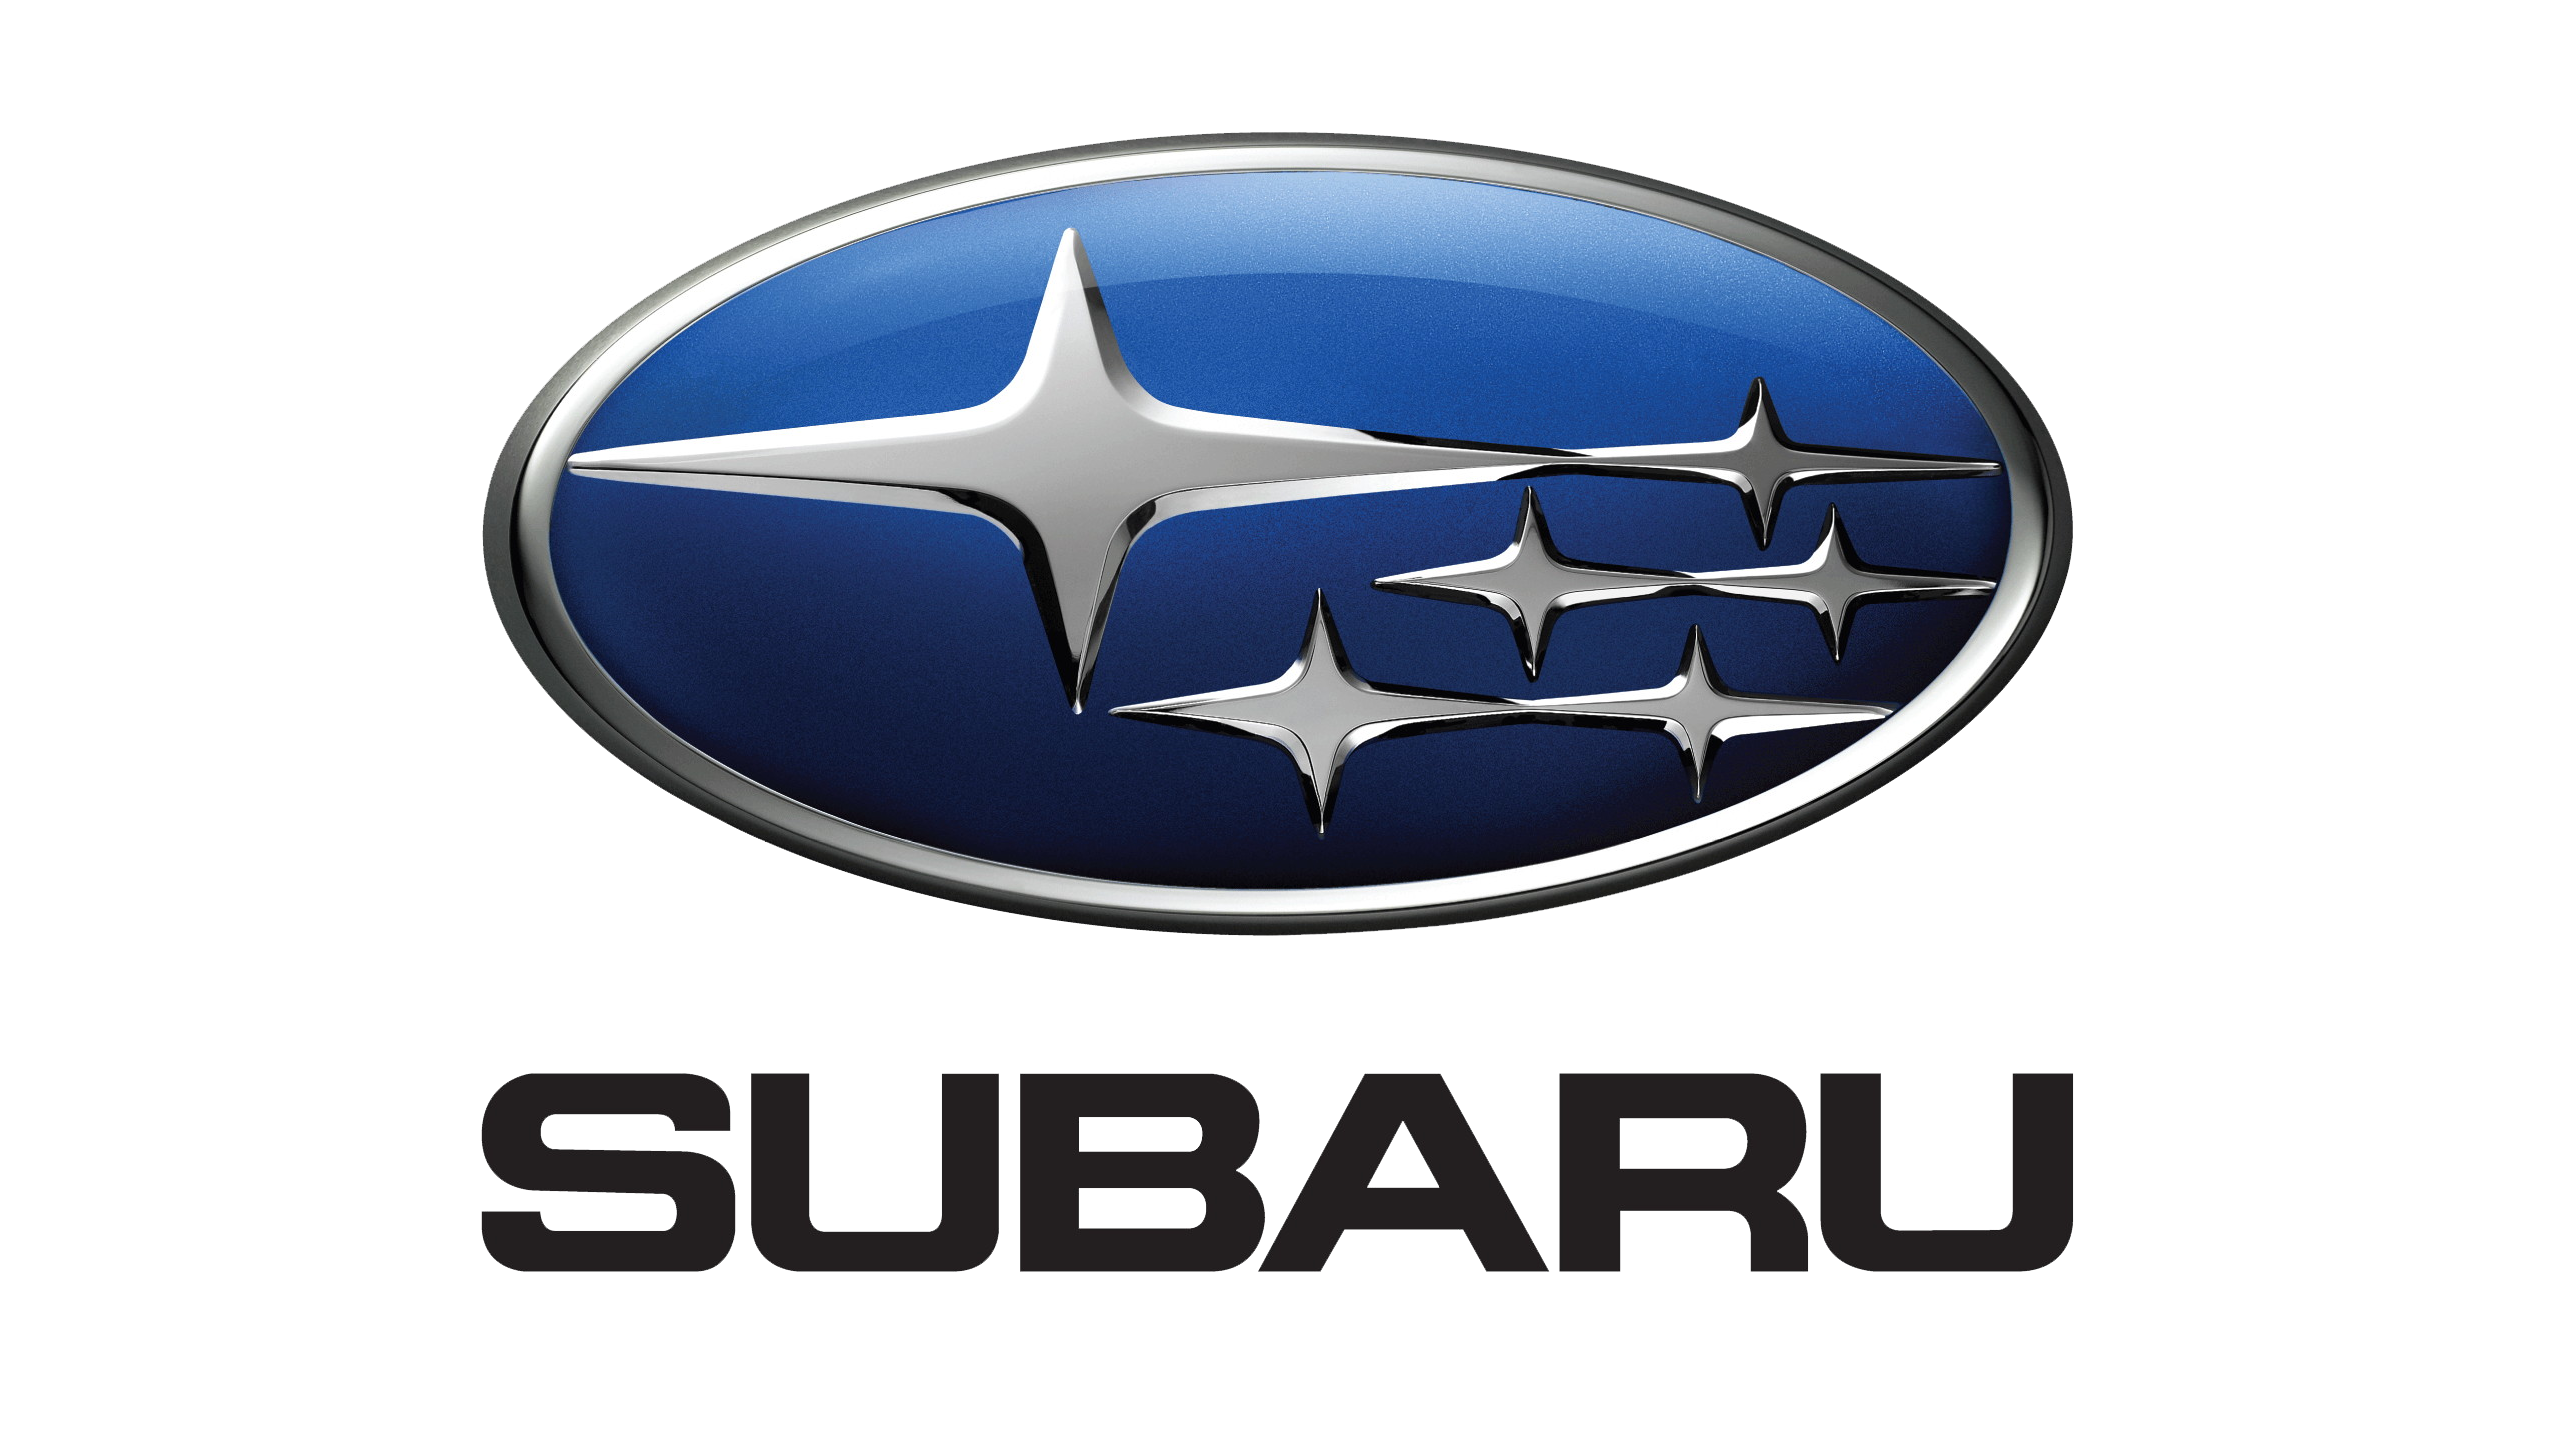 Subaru Wallpapers 1080p